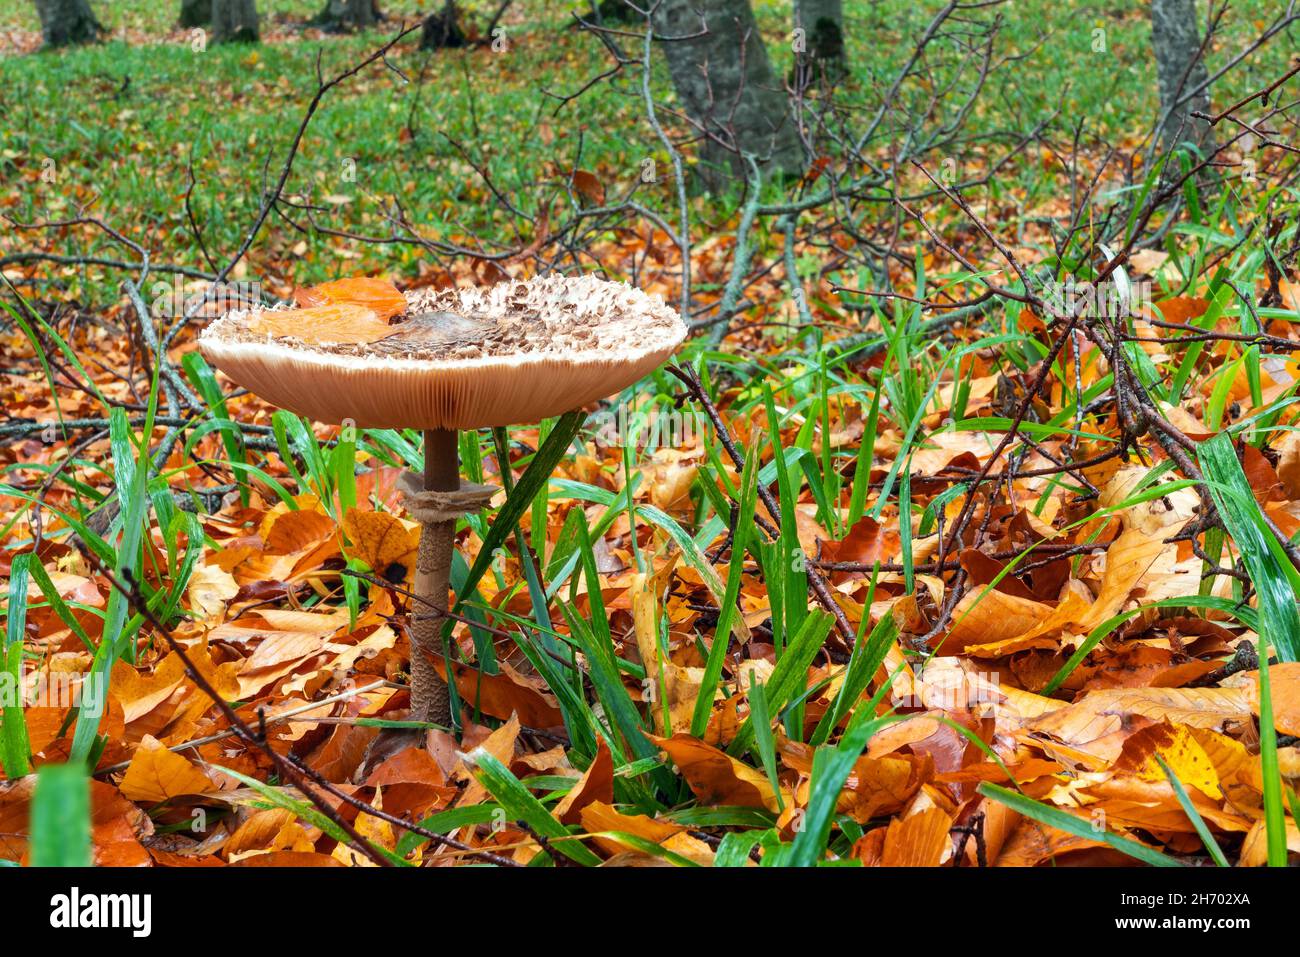 Shaggy Parasol mushroom in a forest. Chlorophyllum rhacodes Stock Photo